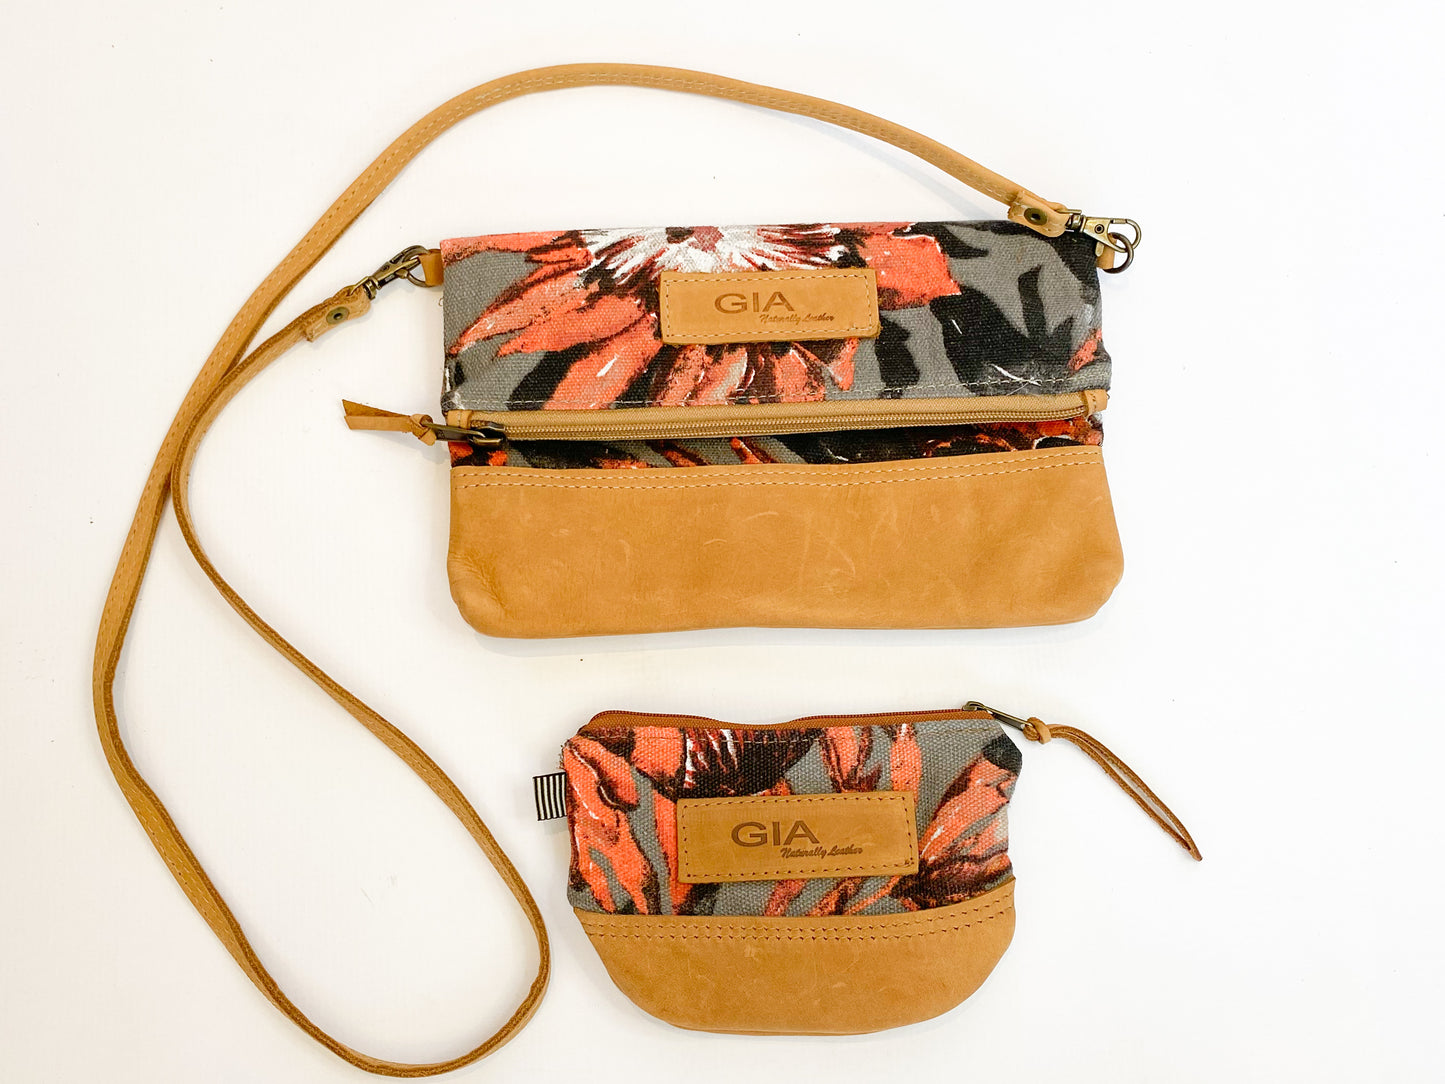 Gia leather and protea purse